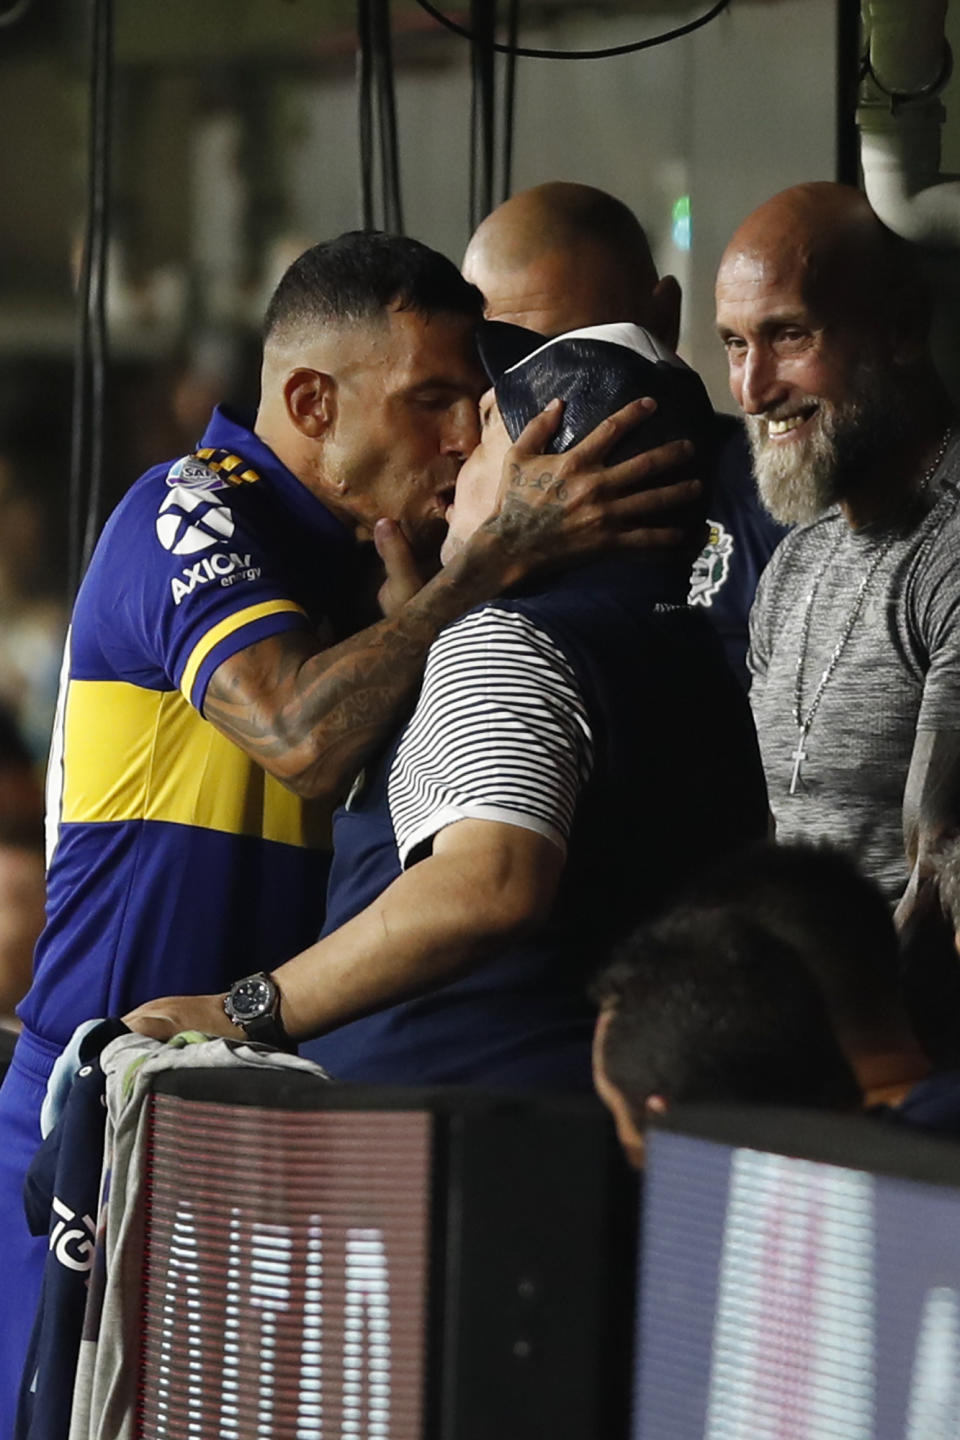 Boca Juniors' Carlos Tevez kisses Gimnasia y Esgrima 's coach Diego Maradona prior to an Argentina's soccer league match at La Bombonera stadium in Buenos Aires, Argentina, Saturday, March 7, 2020. (AP Photo/Natacha Pisarenko)